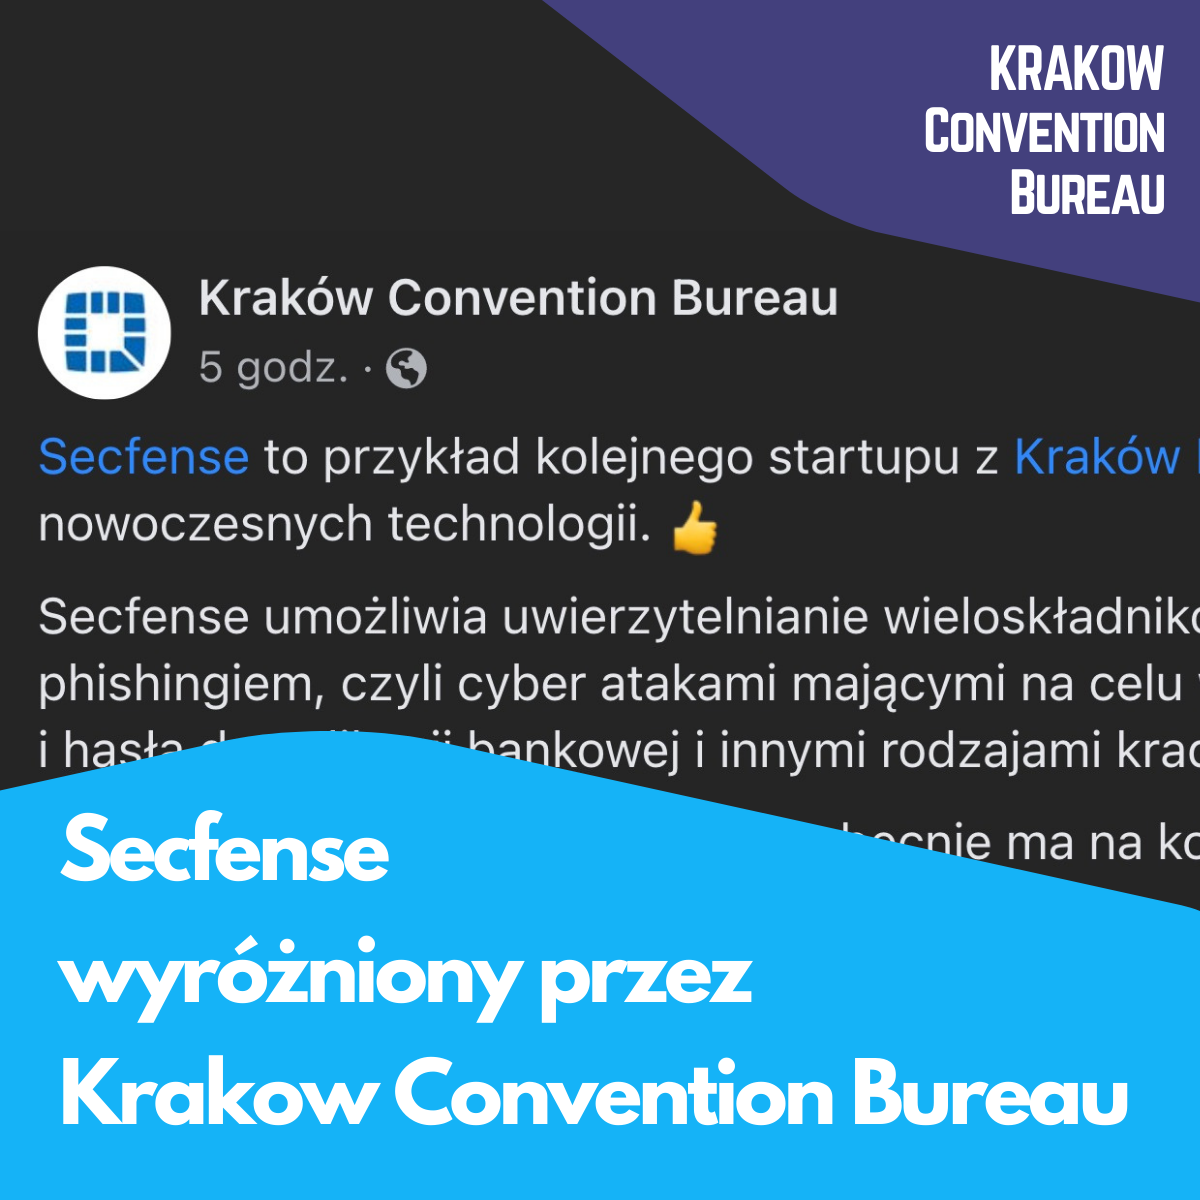 Secfense wyróżniony przez Krakow Convention Bureau